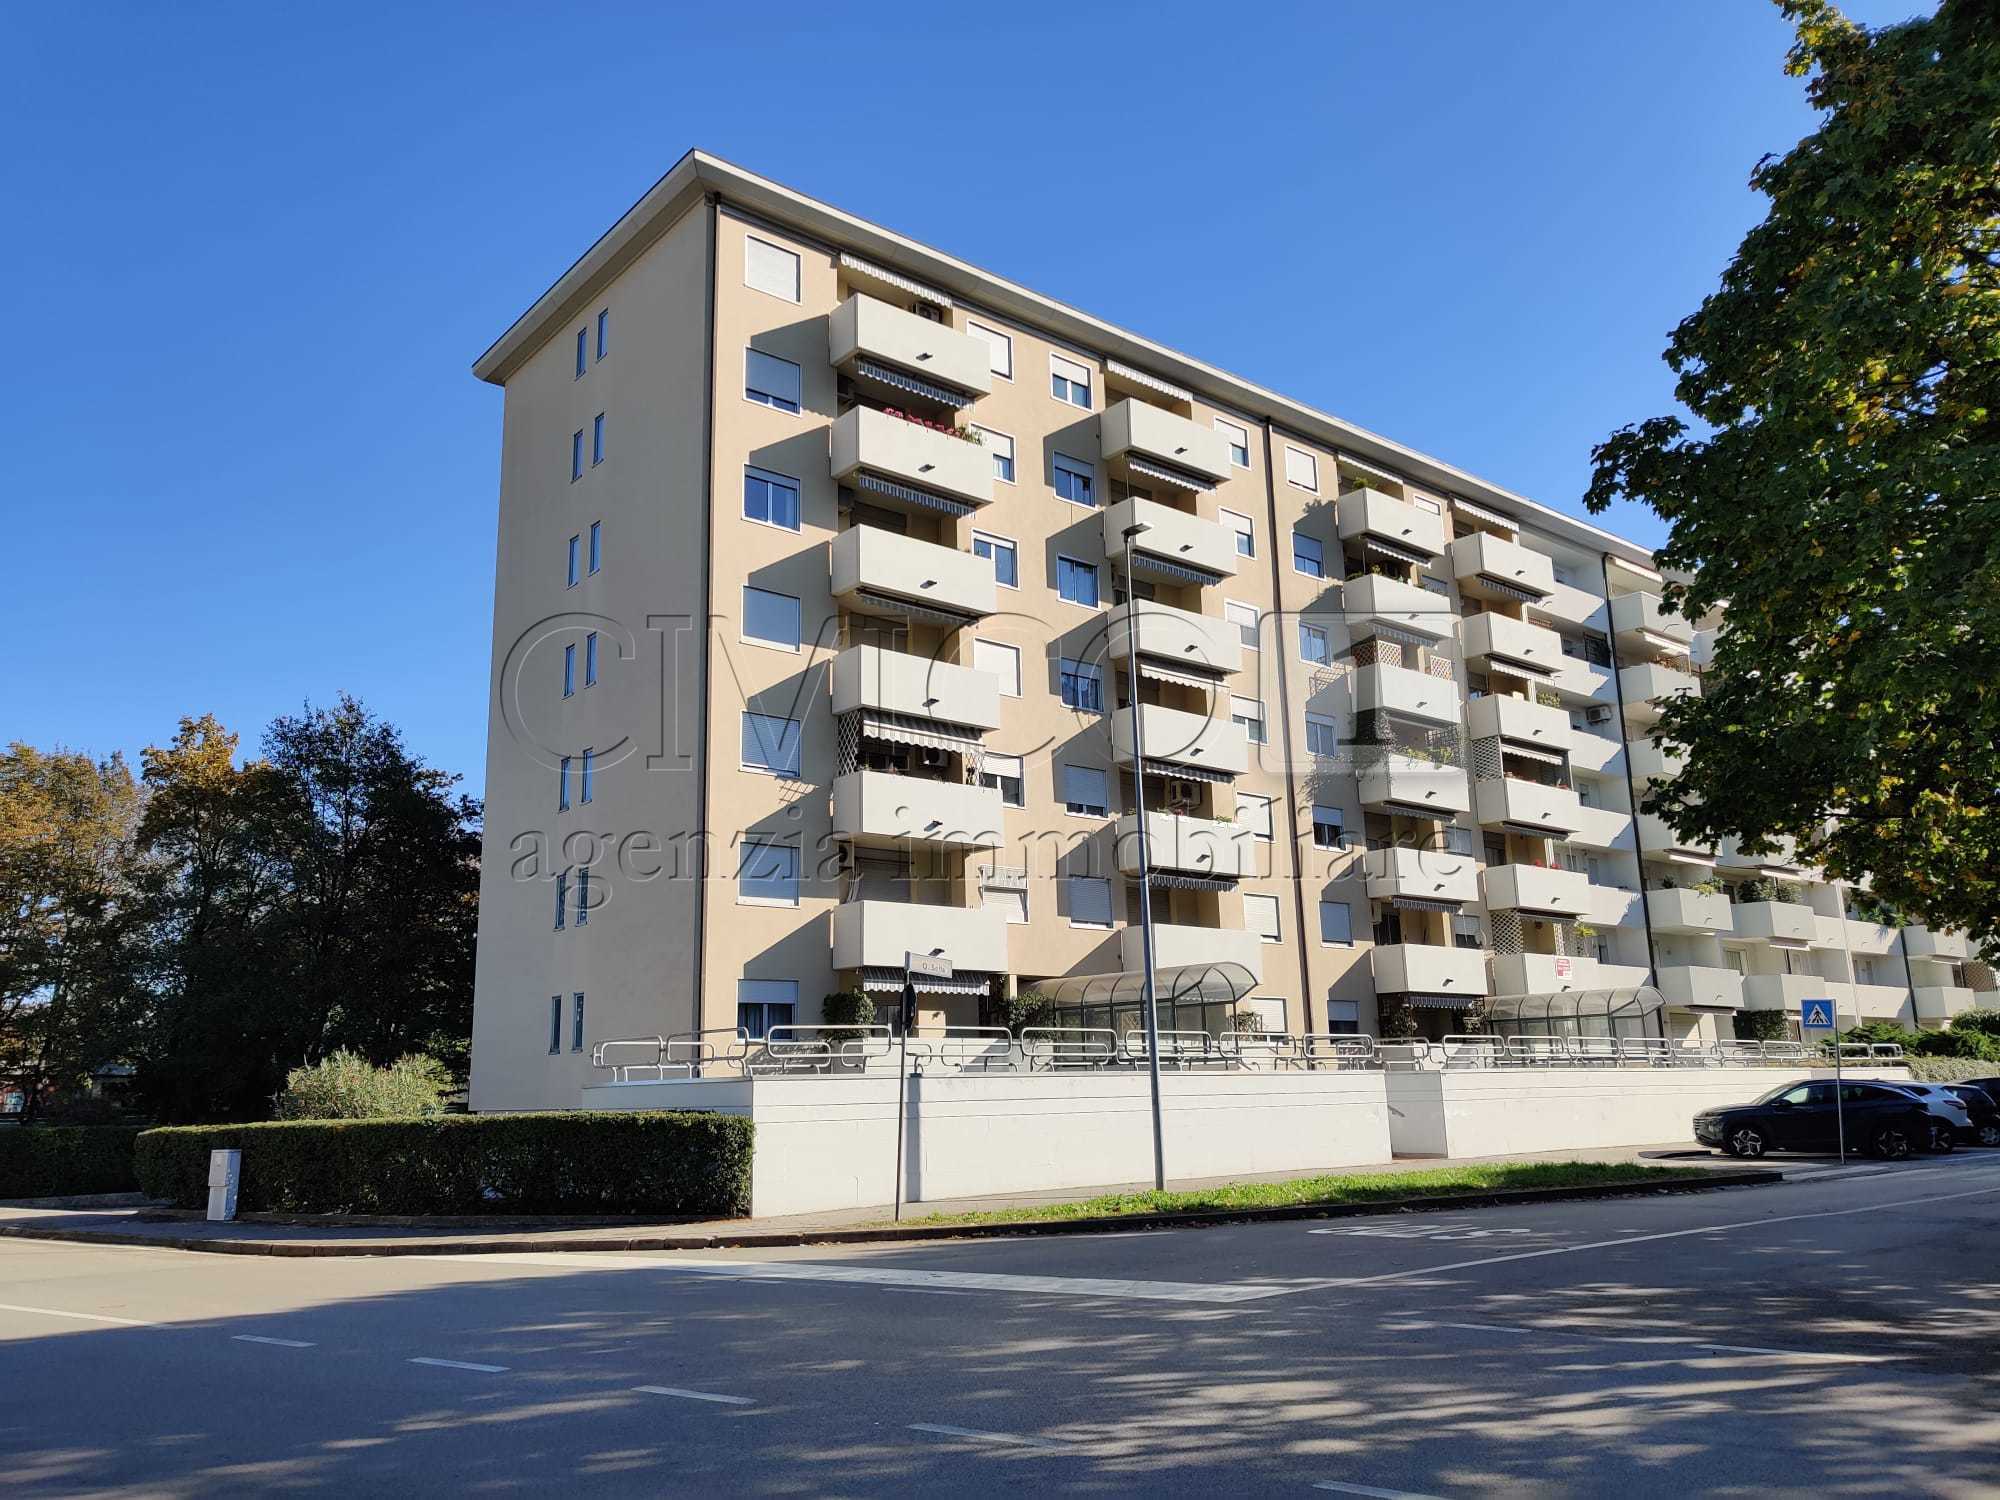 Appartamento con terrazzi in via quintino sella 90, Vicenza